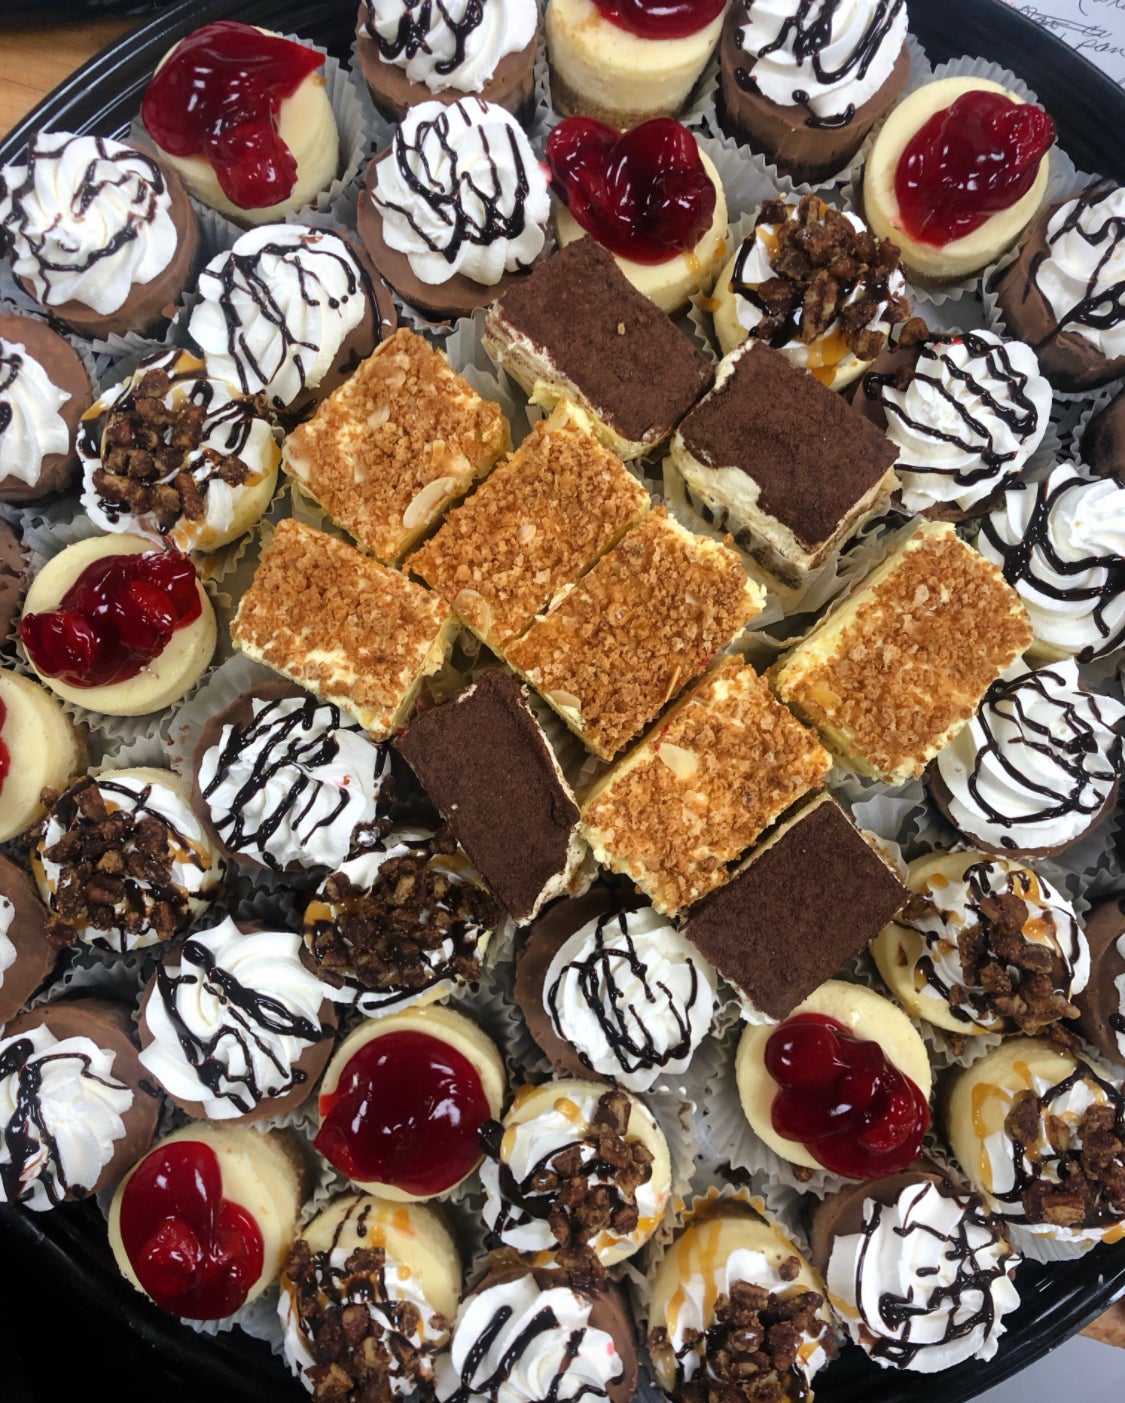 Assorted Pastry Tray | Macri's Bakery